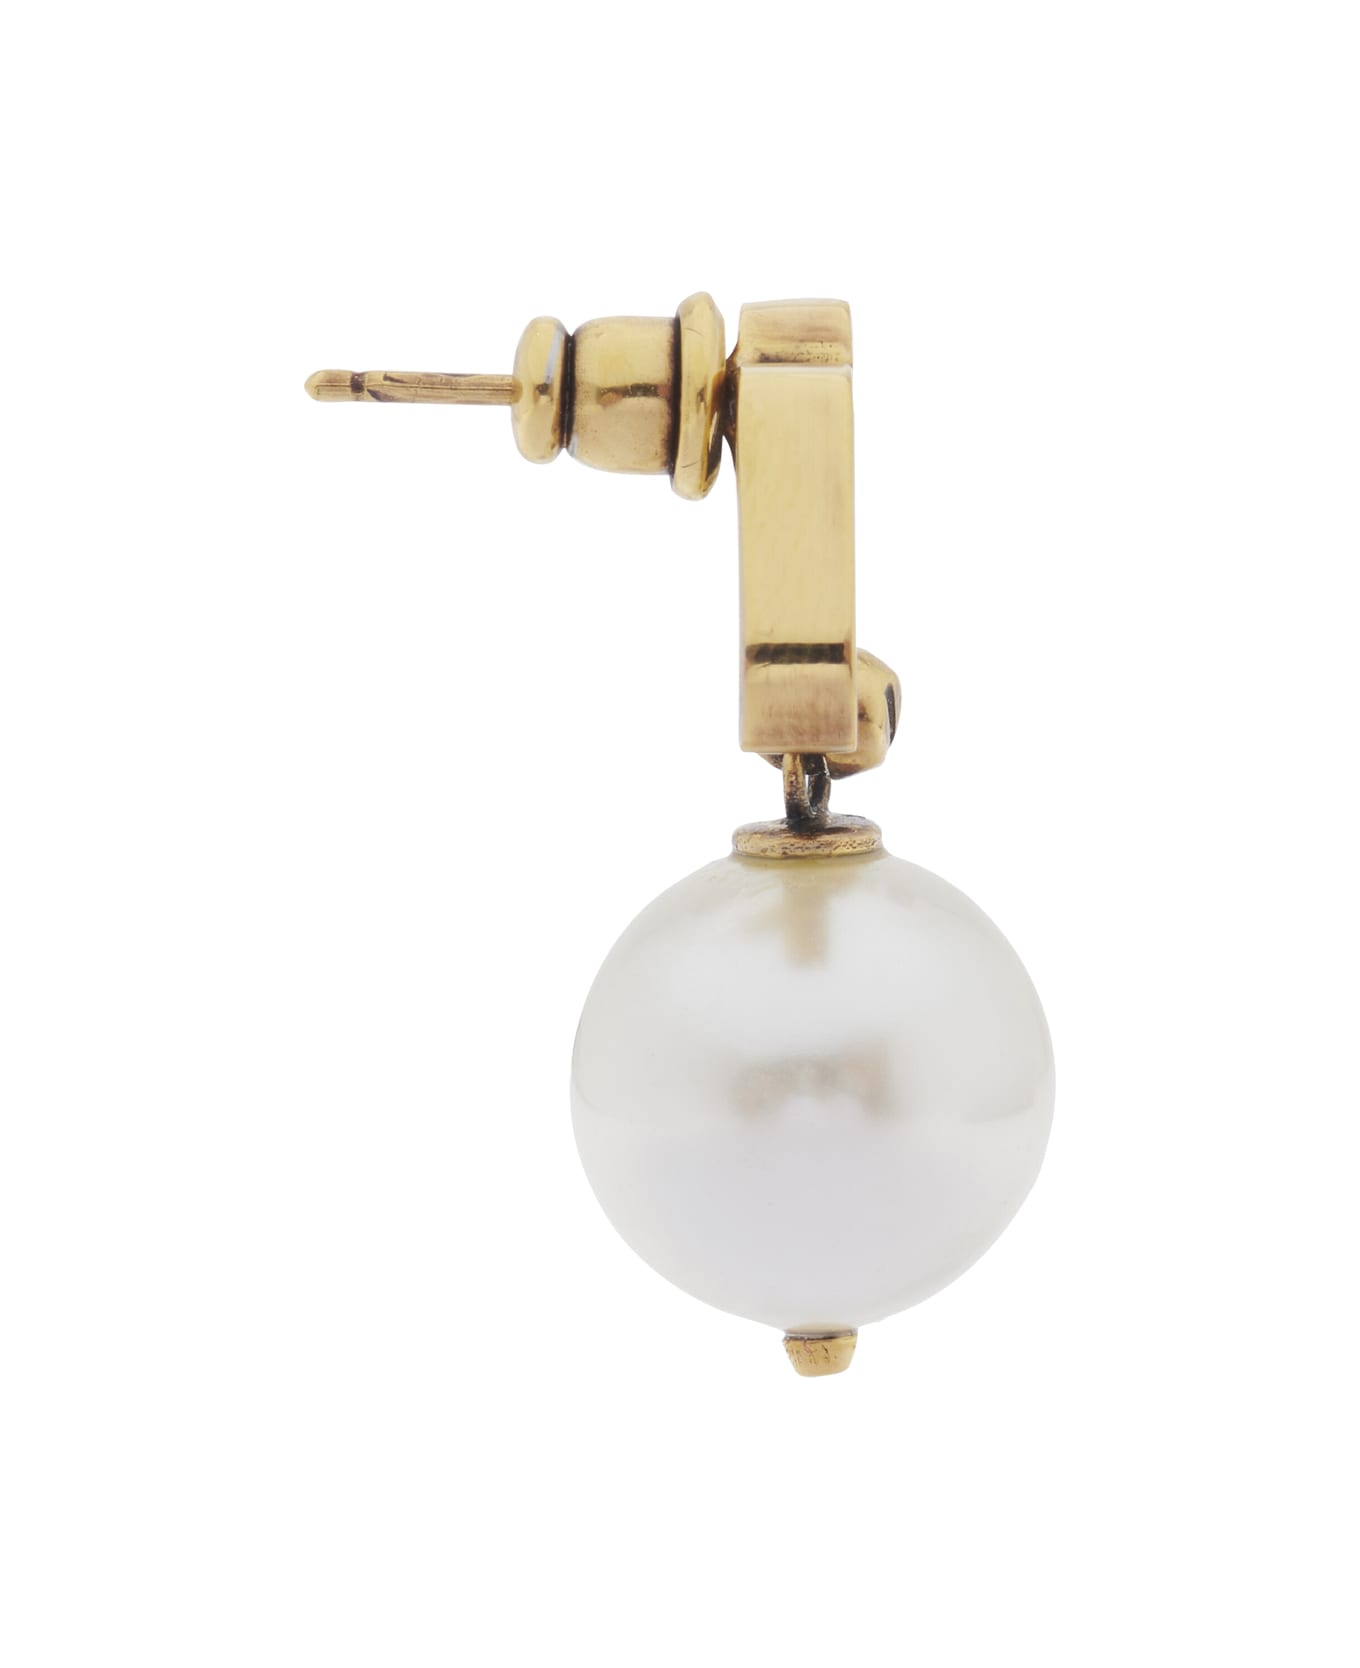 Alexander McQueen Seal Logo Pearl Earrings - Gold/perla